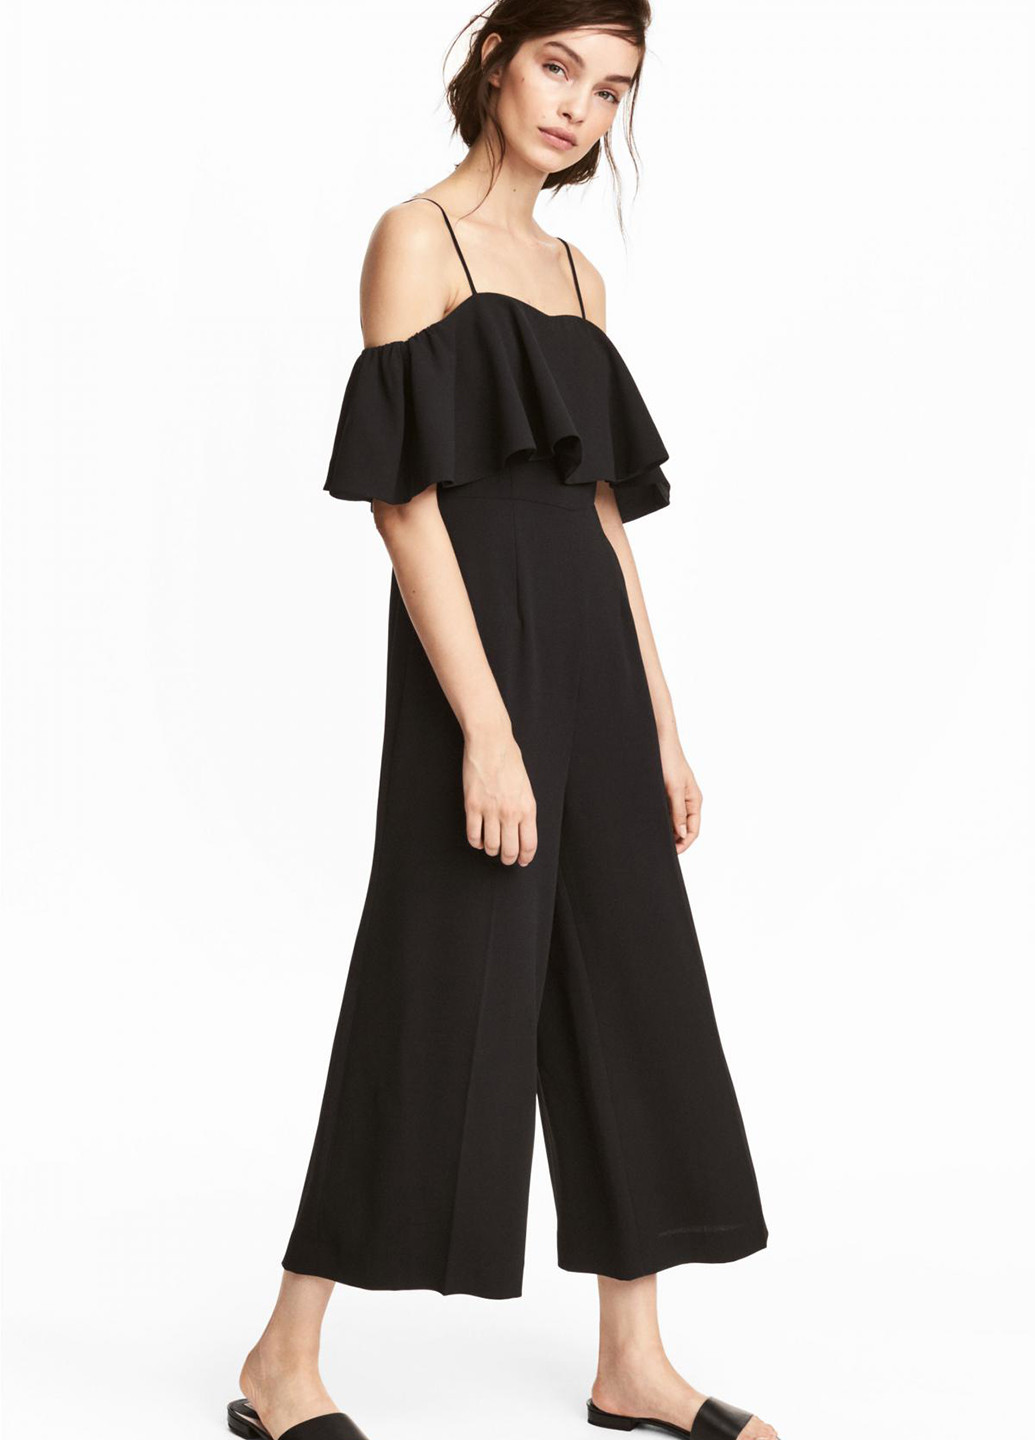 Комбинезон H&M комбинезон-брюки однотонный чёрный кэжуал